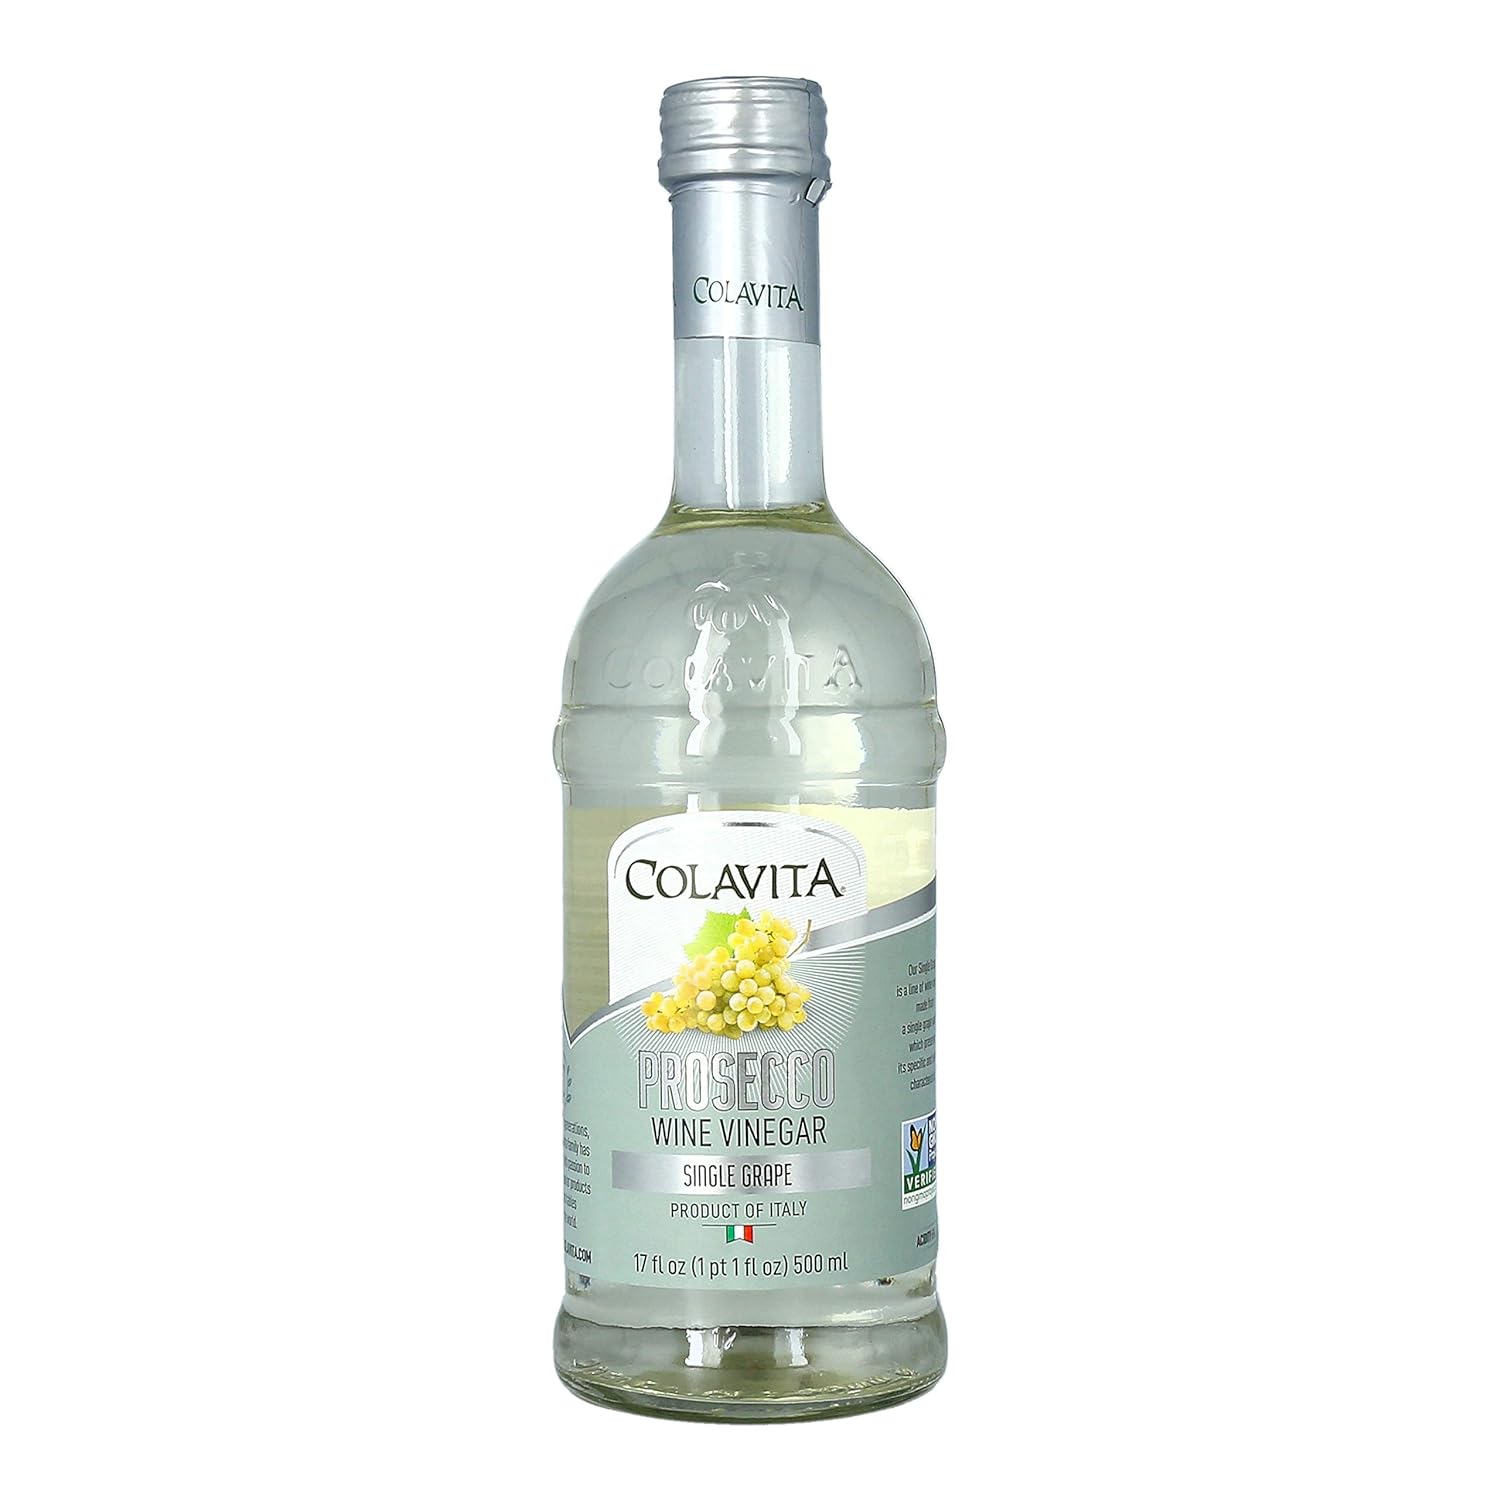 Colavita Wine Vinegar - Prosecco White Wine Vinegar, Non GMO, 17 Ounces